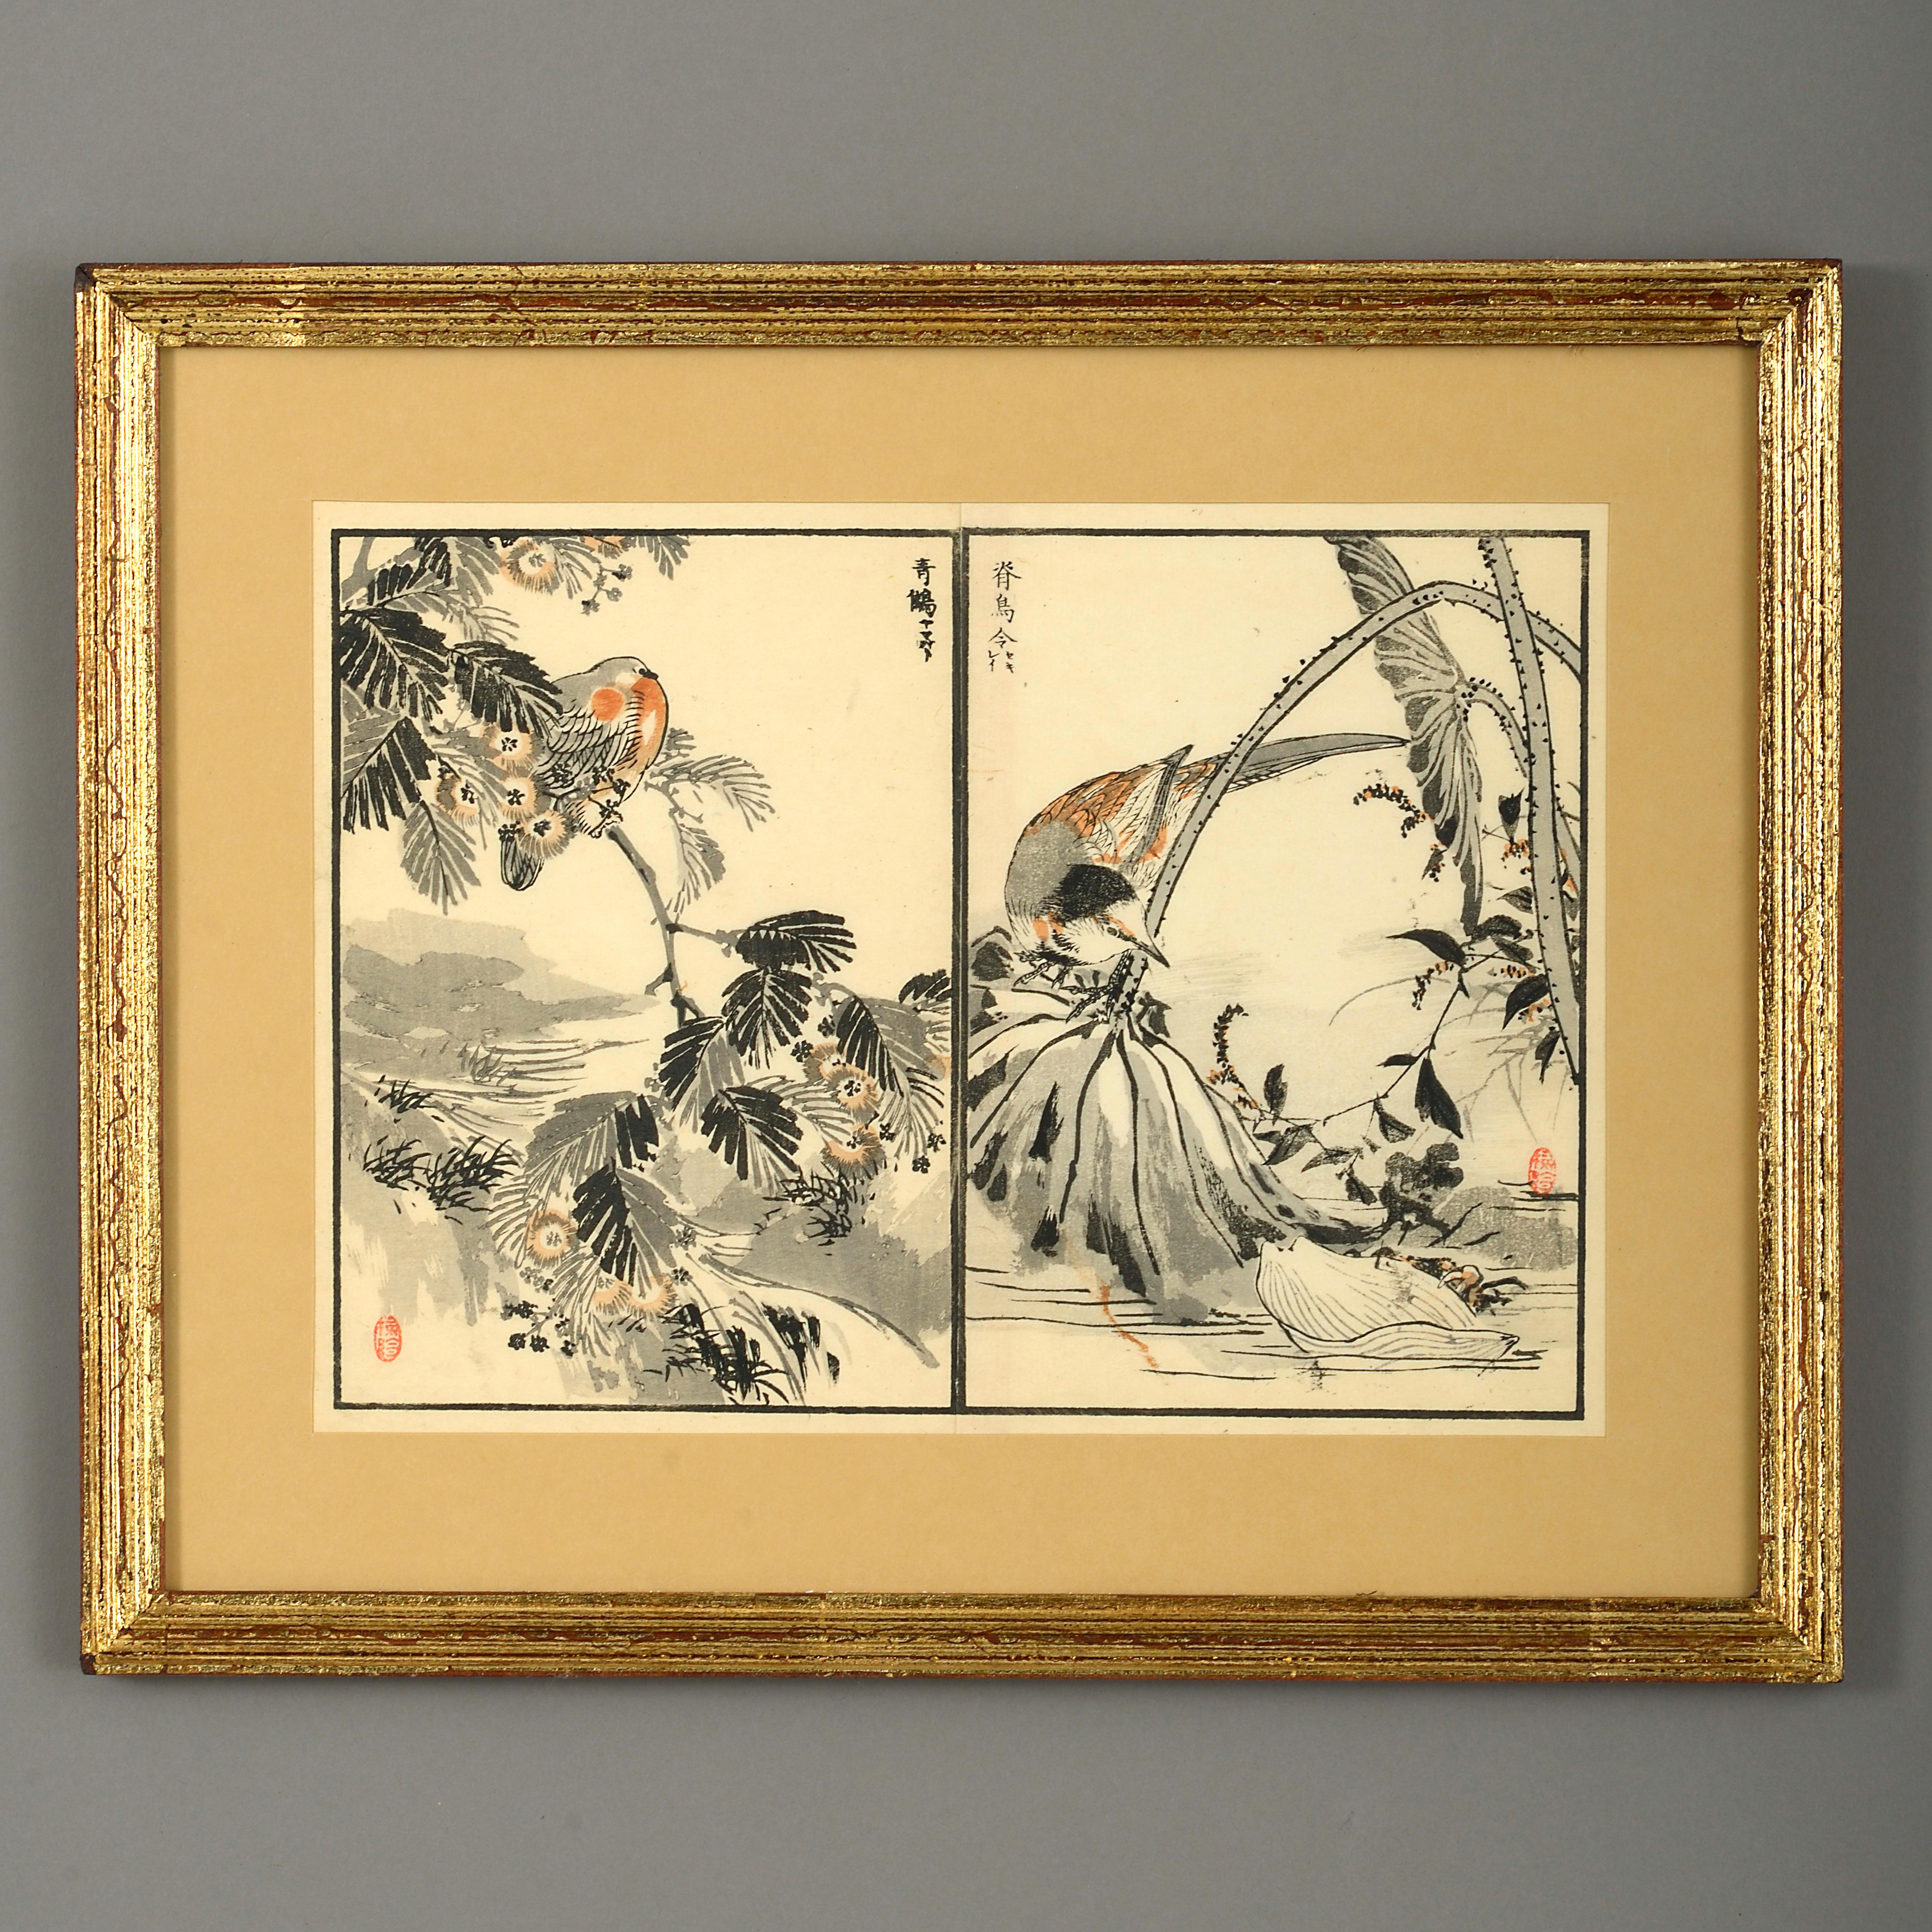 Neuf estampes sur bois de la fin du XIXe siècle de la période Meiji - Print de Unknown